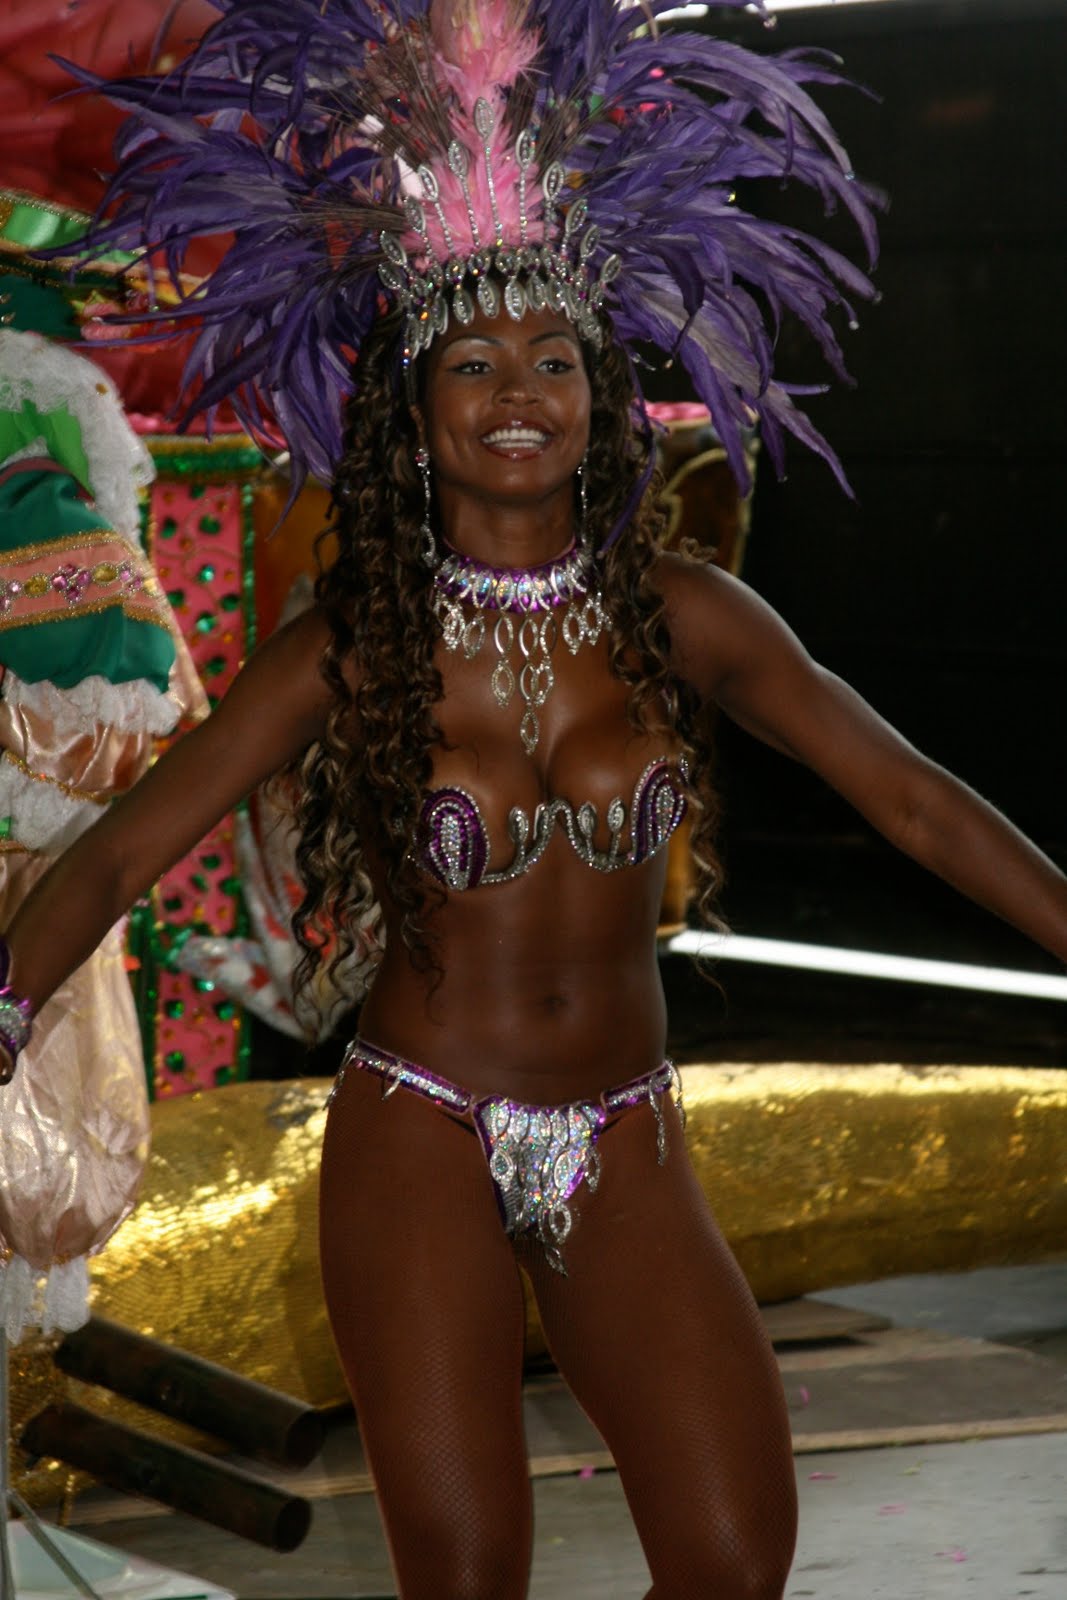 Dancer, Rio de Janeiro, Brazil